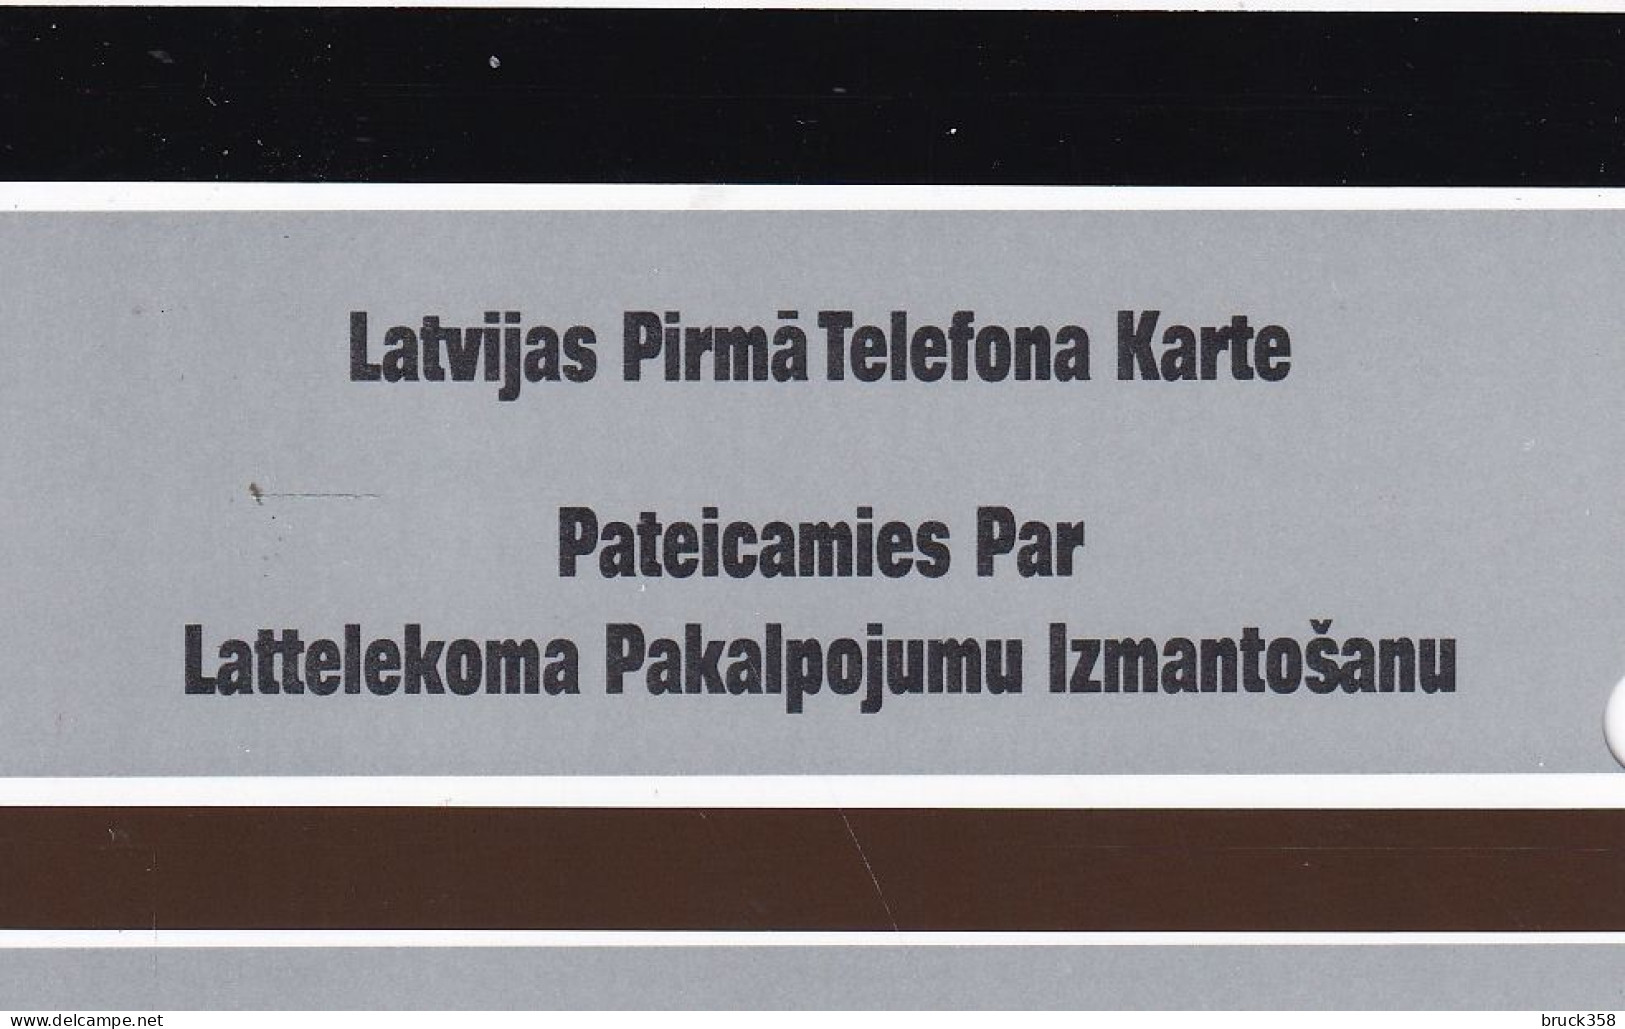 LETTLAND - Latvia